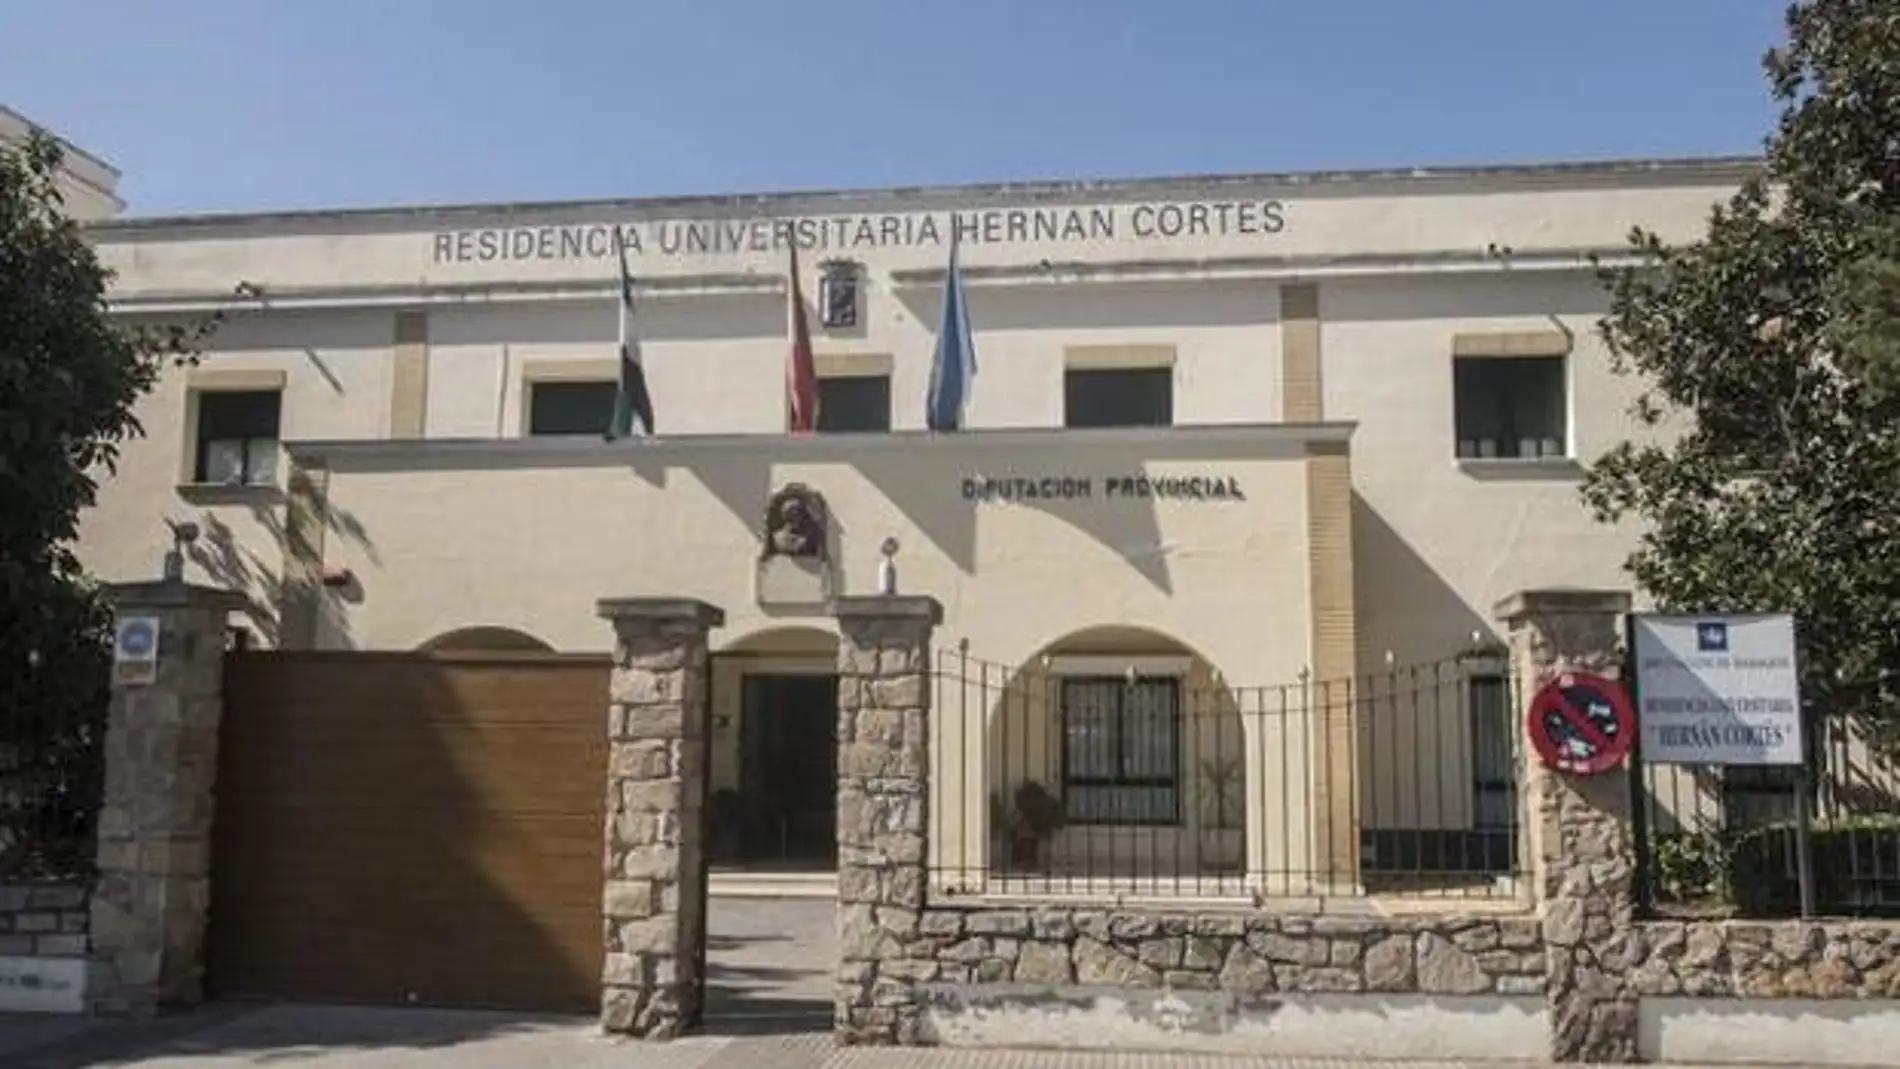 La Residencia Hernán Cortés de Badajoz celebra su II Semana del Libro con cine o una mesa redonda sobre feminismo rural